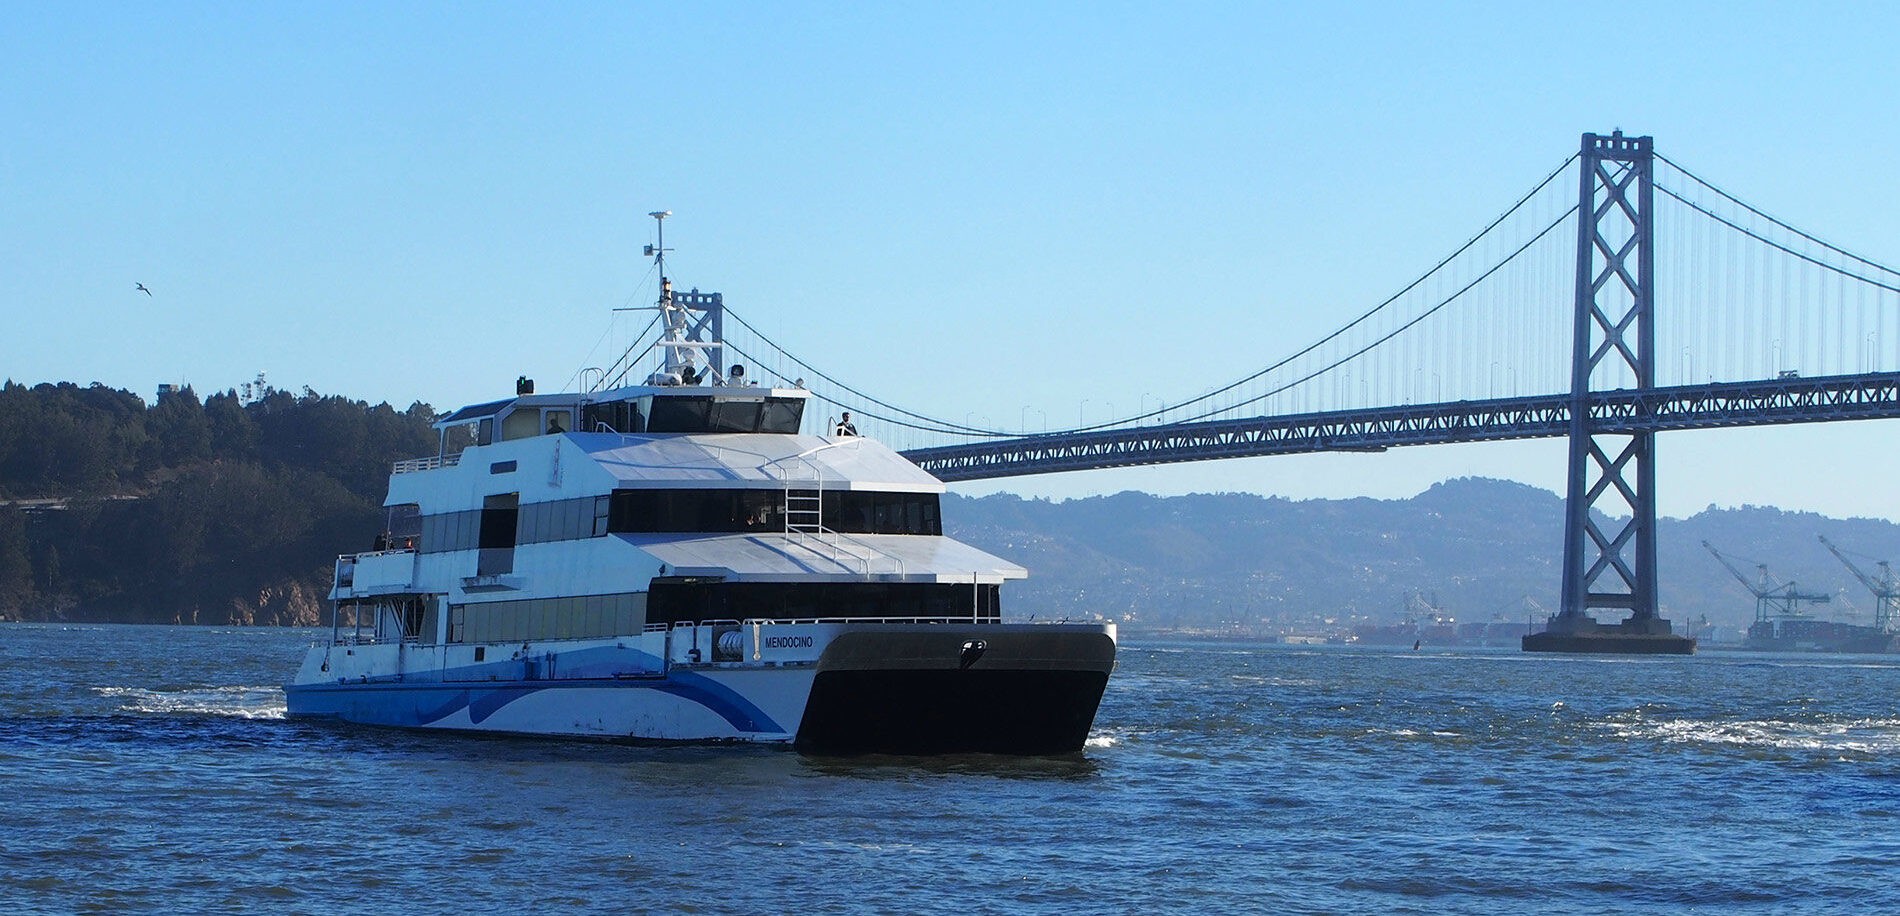 Fahren mit HVO: Golden Gate Ferries in San Francisco haben Herstellerfreigabe für mtu-Motoren. Foto: toolfuel.de